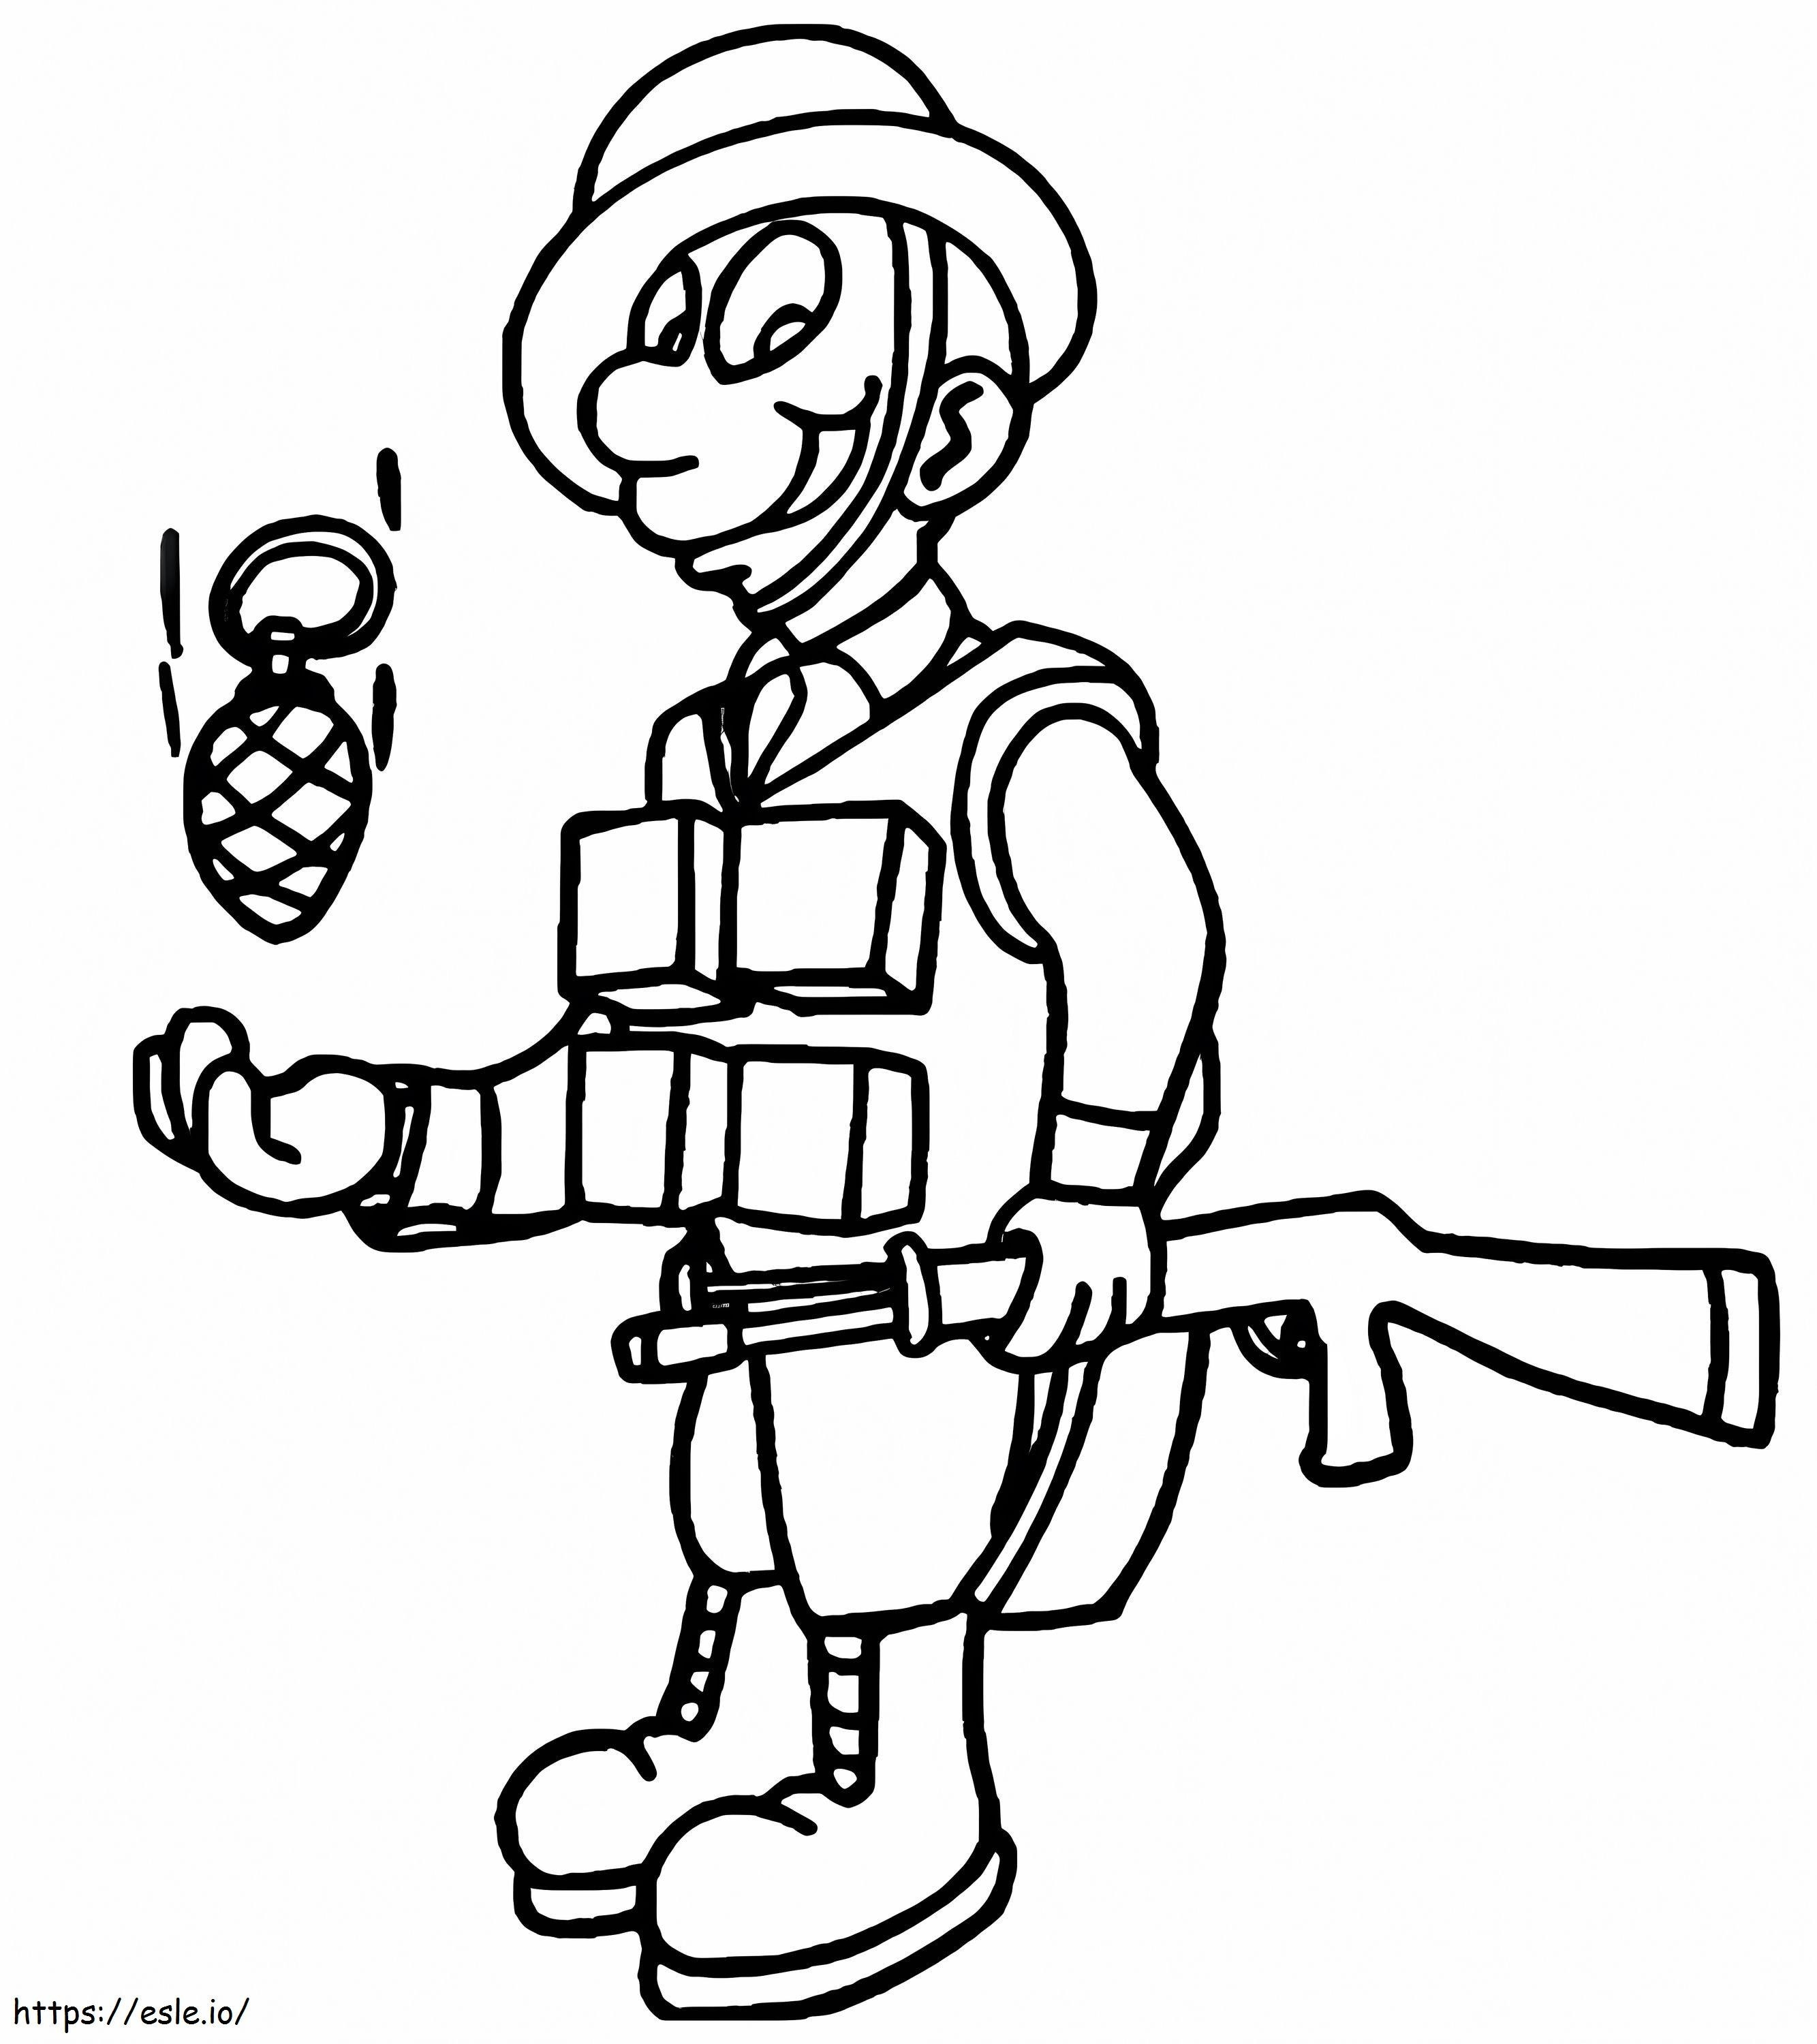 Żołnierz trzymający pistolet kolorowanka